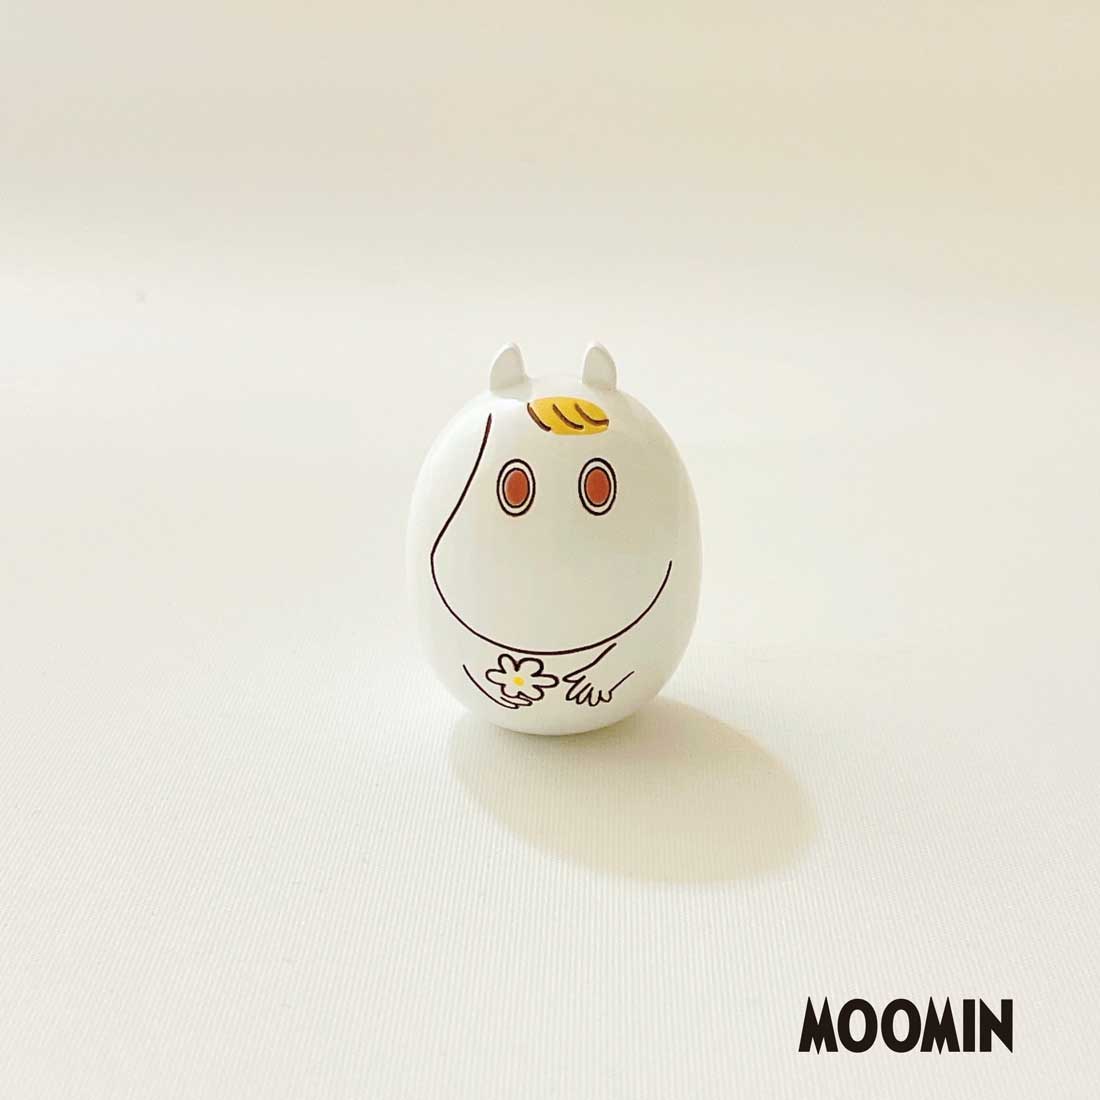 スノークのおじょうさん 小 ミニこけし Moomin 雑貨 